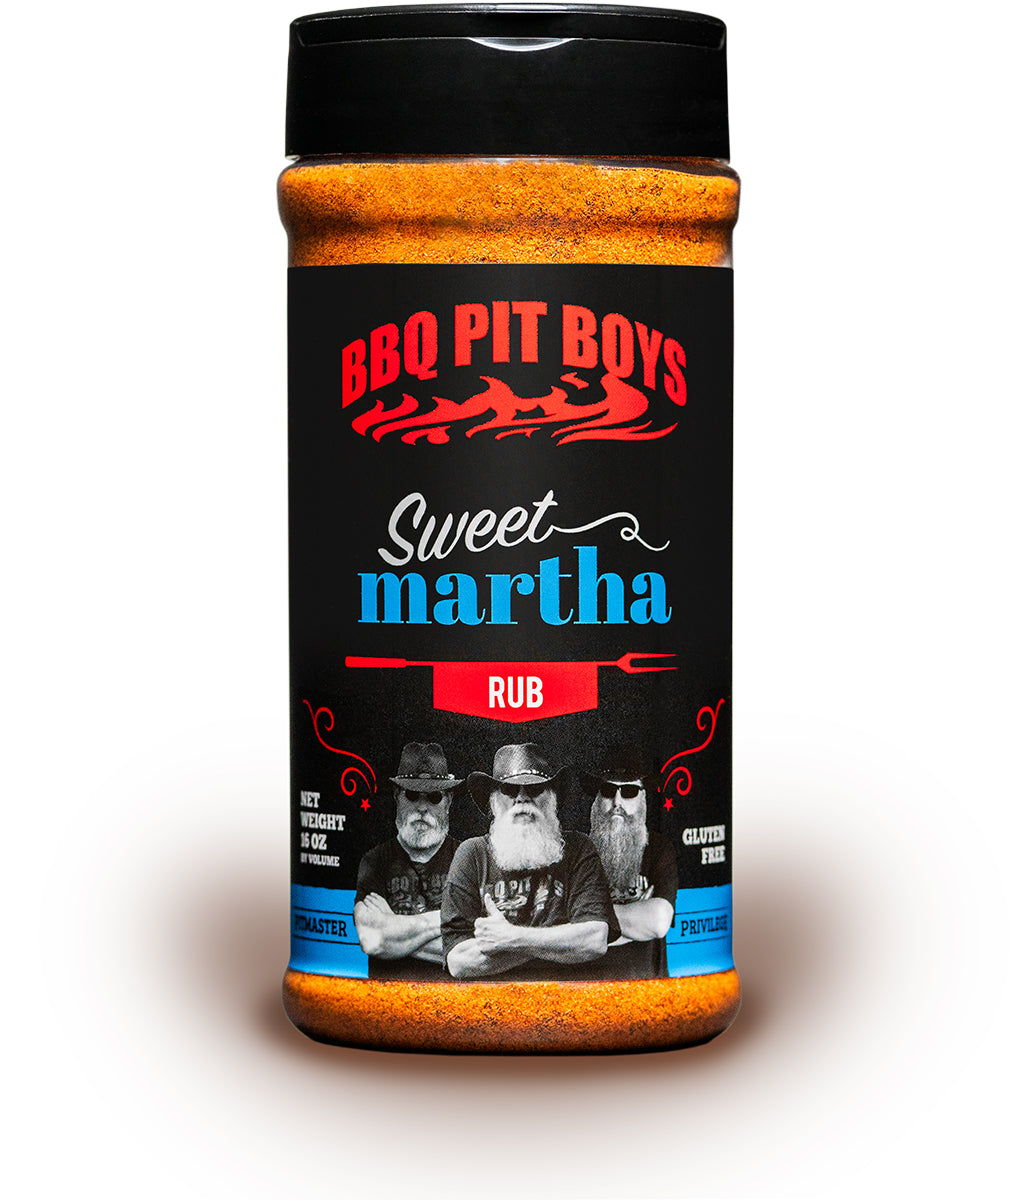 Sweet Martha – BBQ Boys Pit